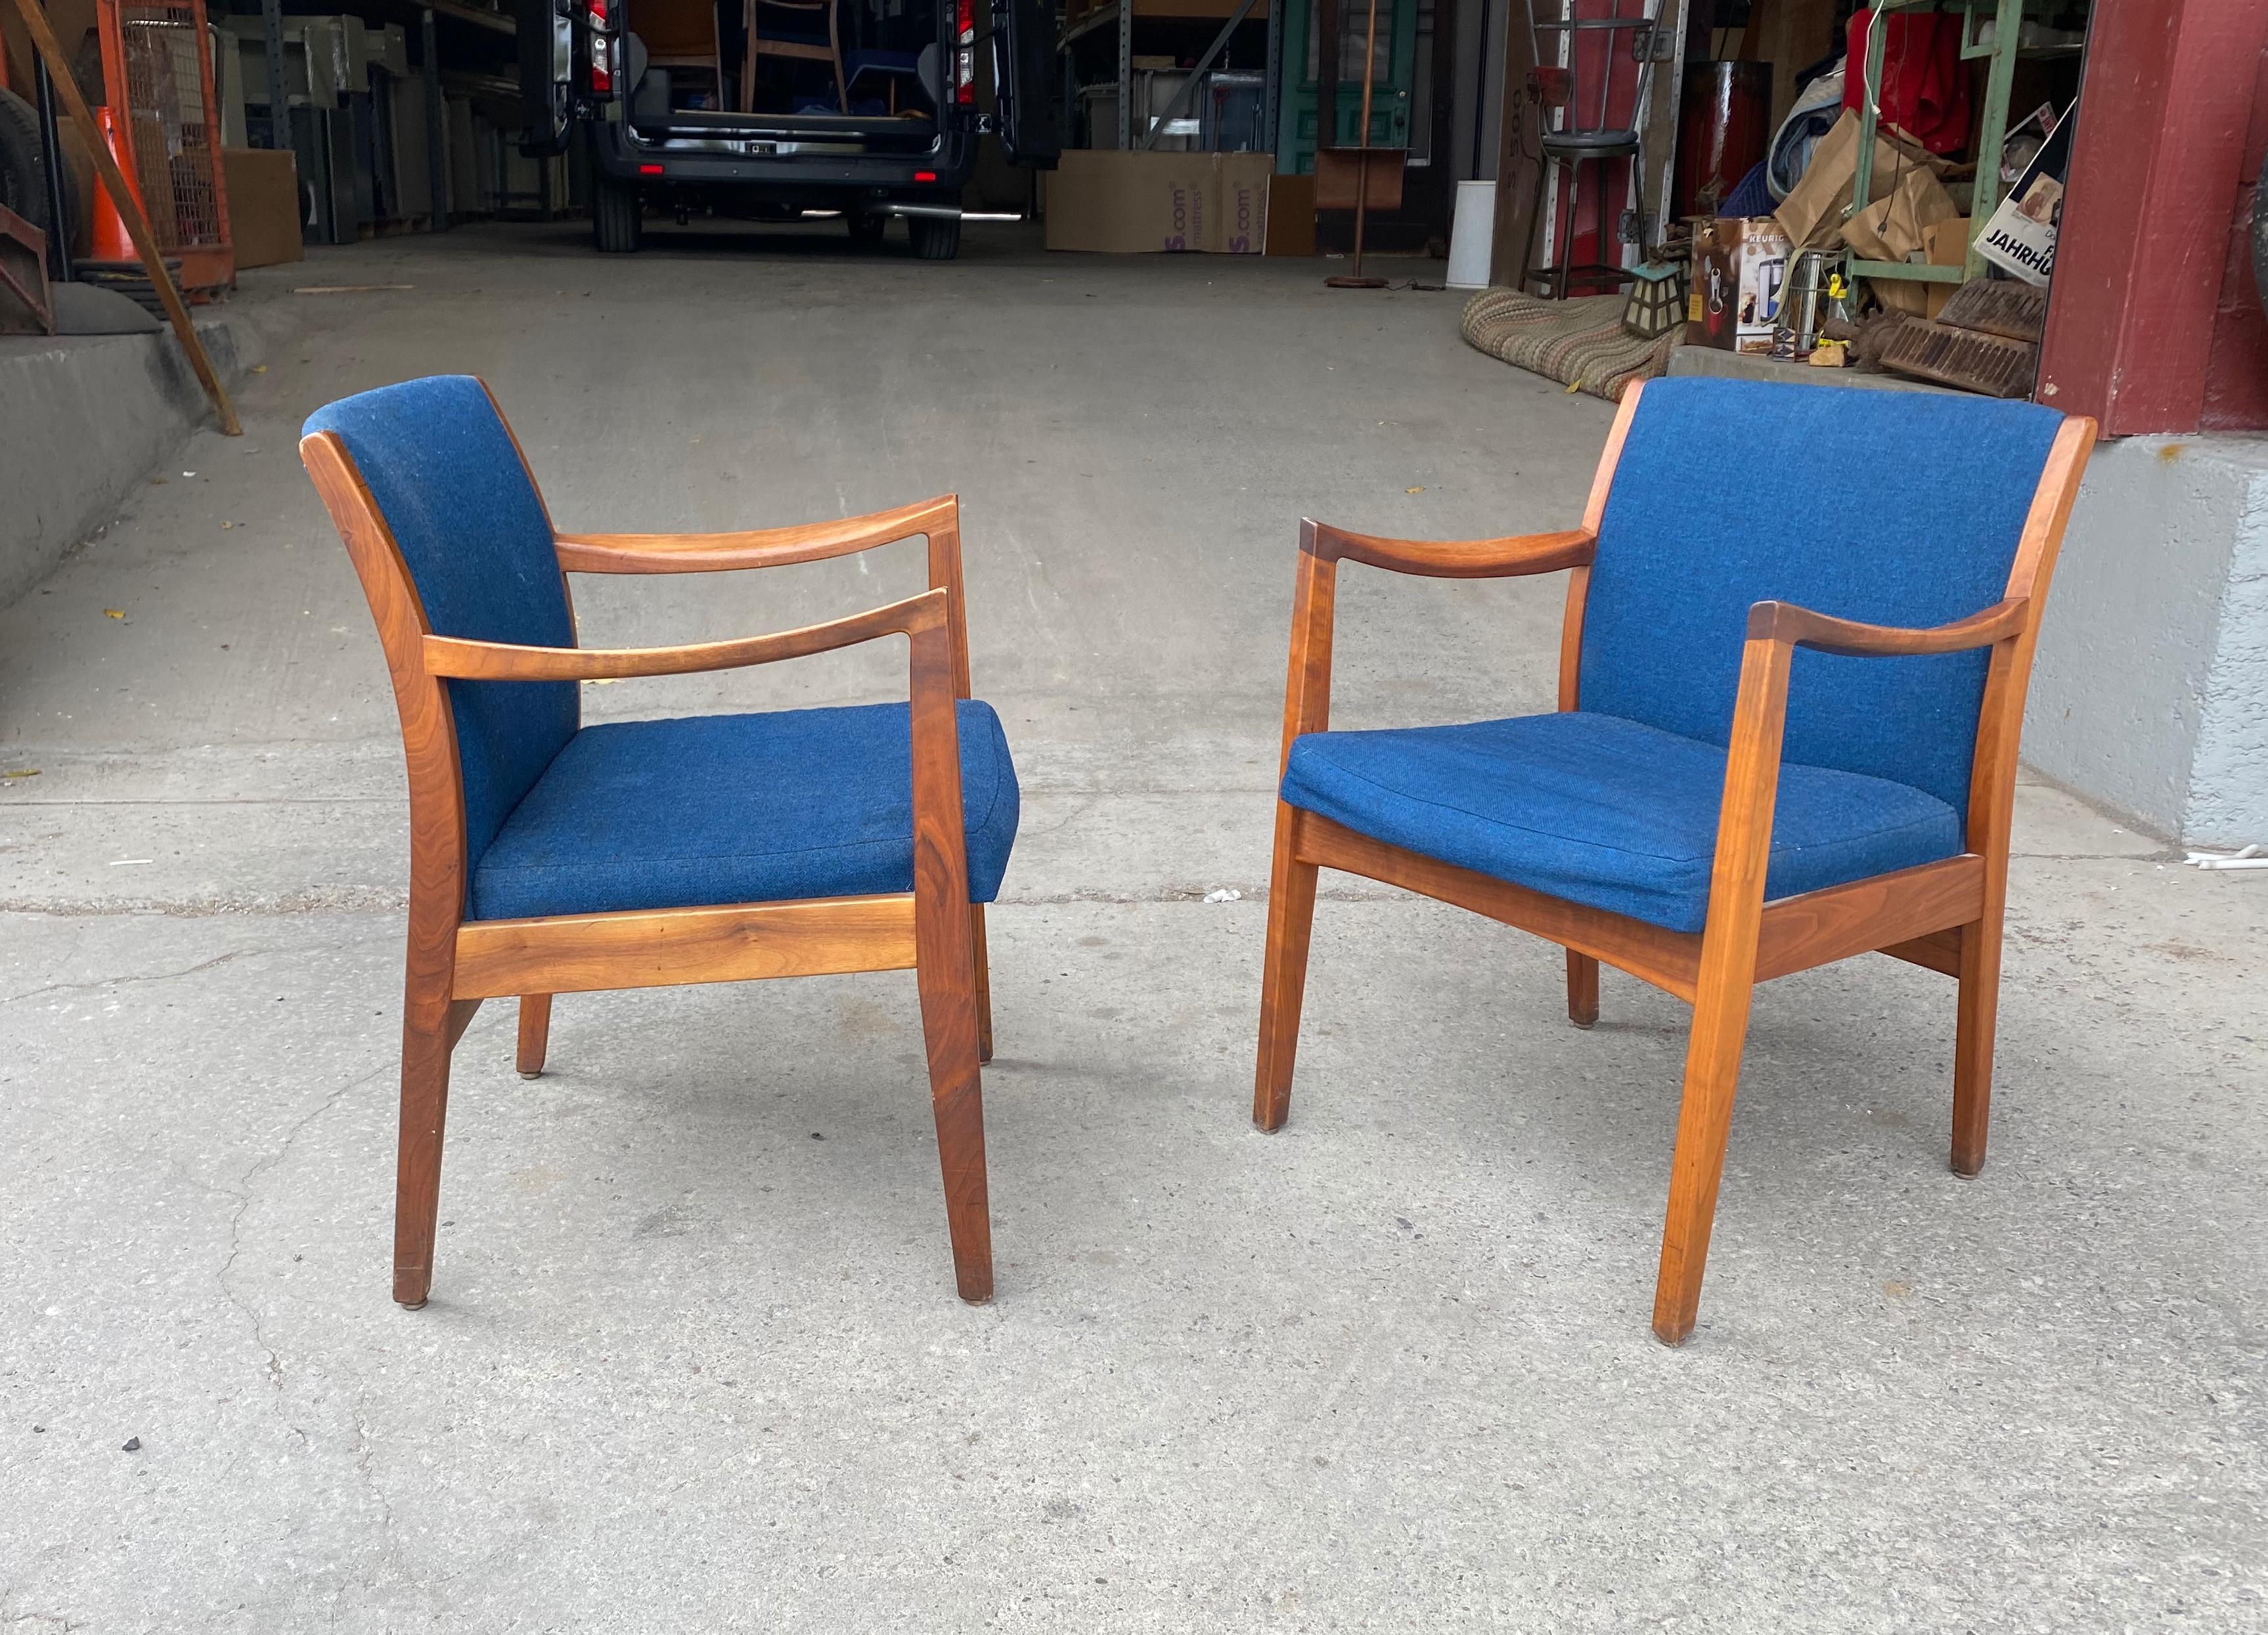 Dieses atemberaubende Paar moderner Sessel im Vintage-Stil hat einen schönen Rahmen aus Walnussholz mit geschwungenen Armlehnen und gepolsterten Rückenlehnen. Behält den originalen blauen Wollstoff in schönem Originalzustand. Ein wunderbares Design,